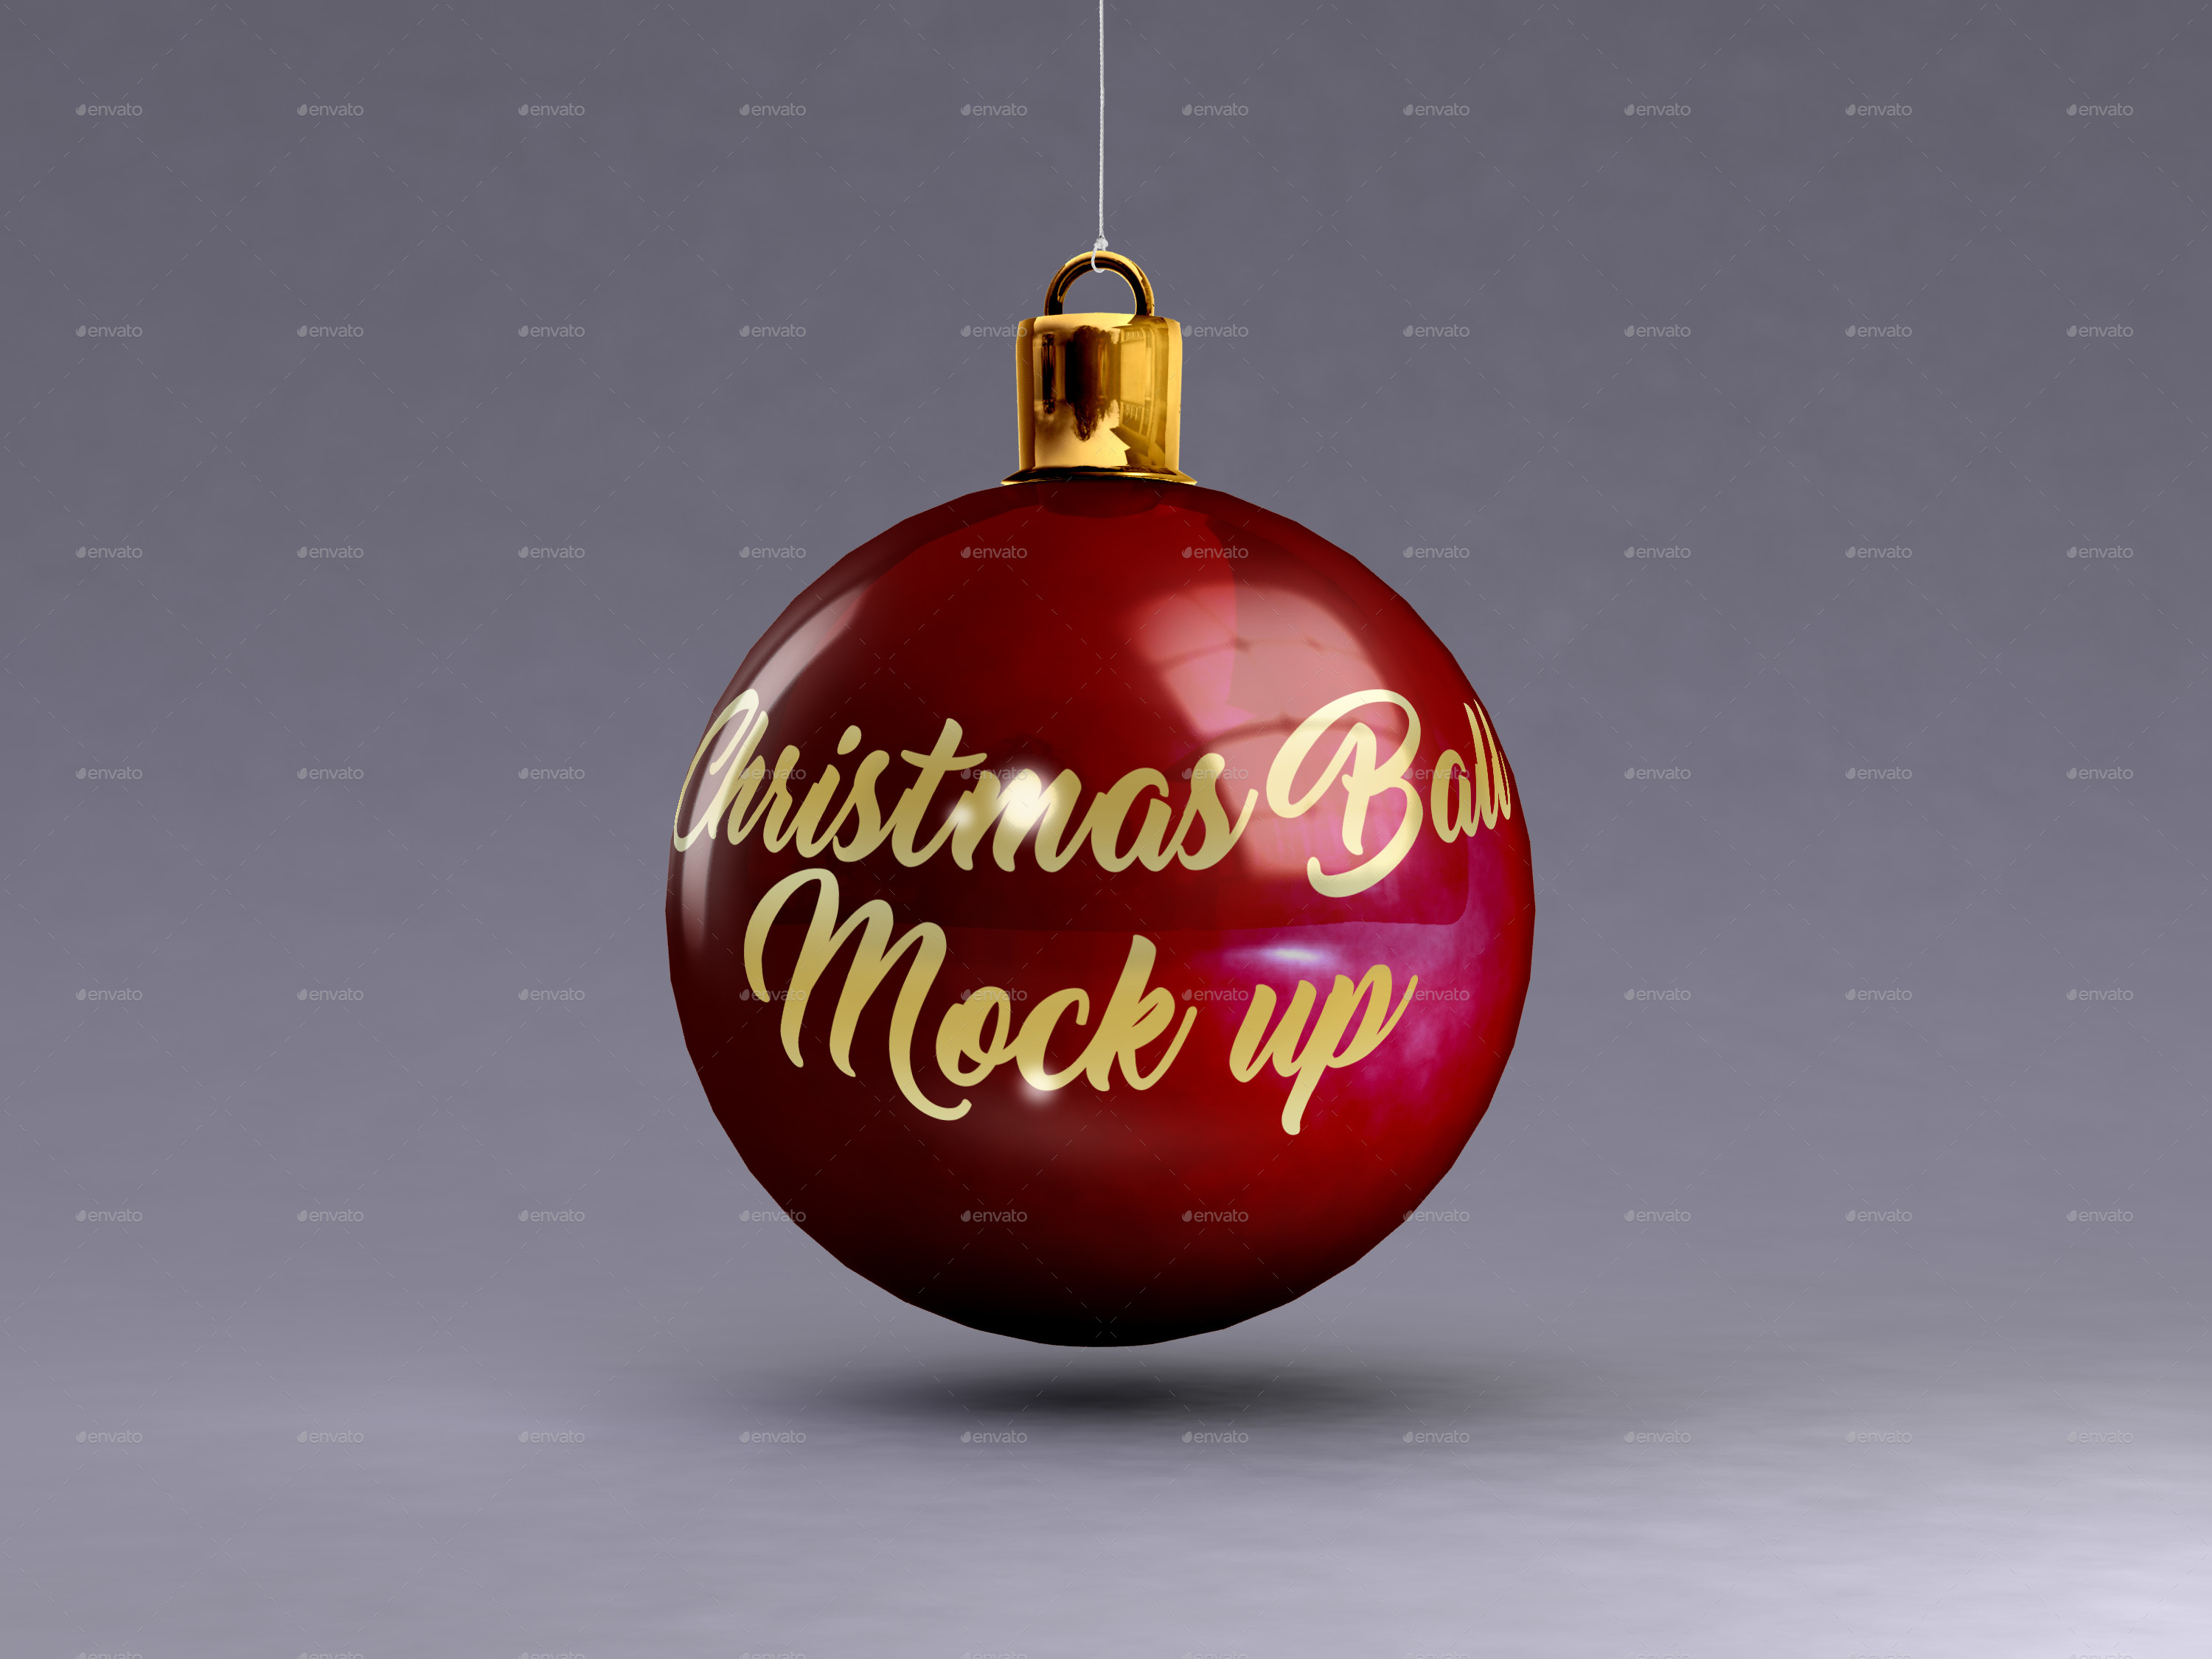 Designer Essentials Christmas Balls Mock up by rbakker | GraphicRiver